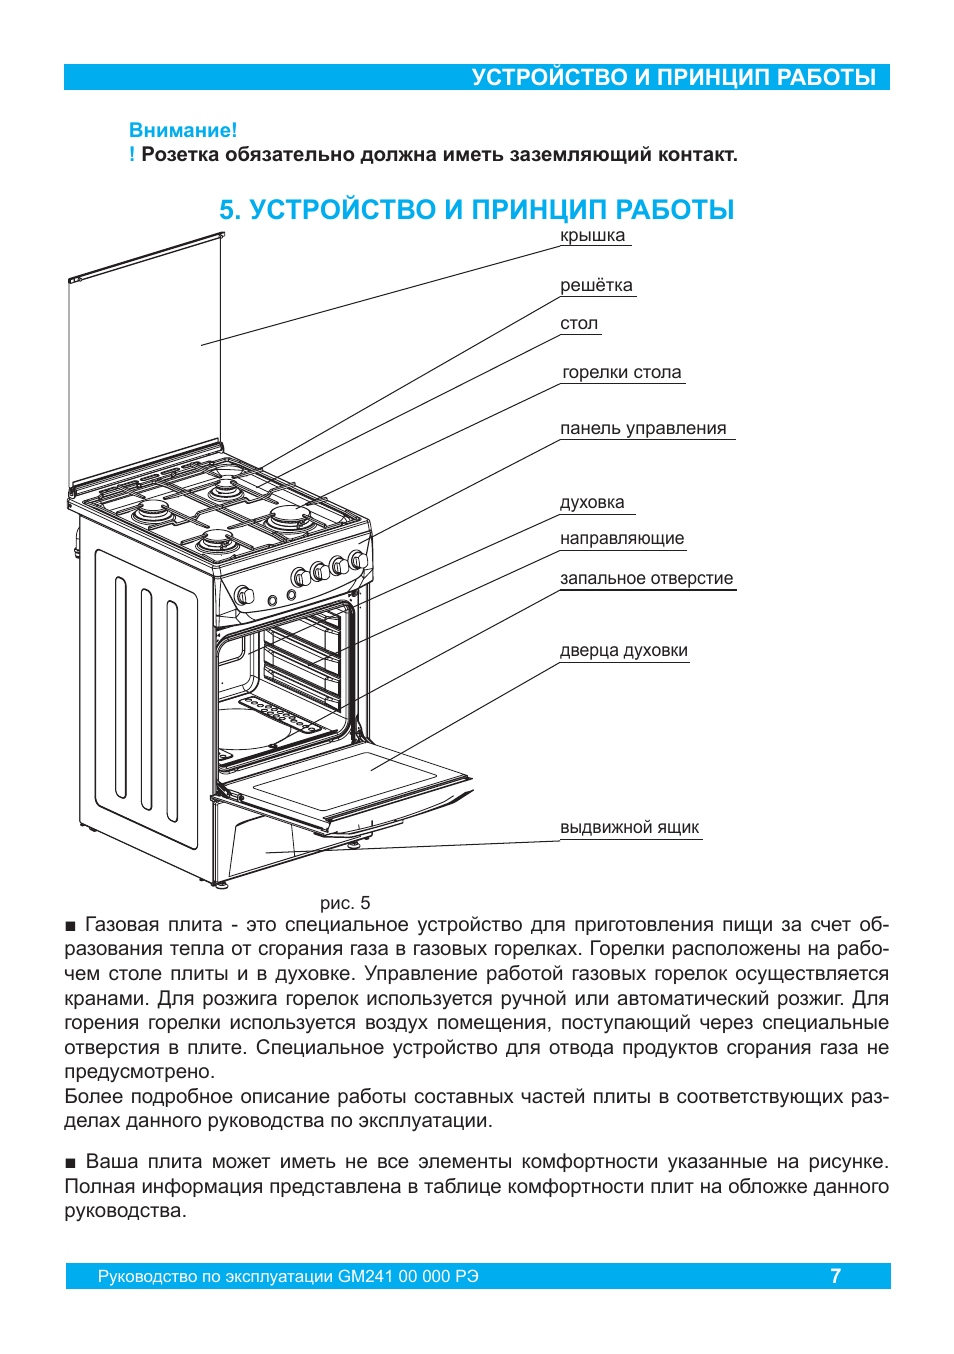 Как пользоваться электрической плитой – инструкция по эксплуатации и меры безопасности